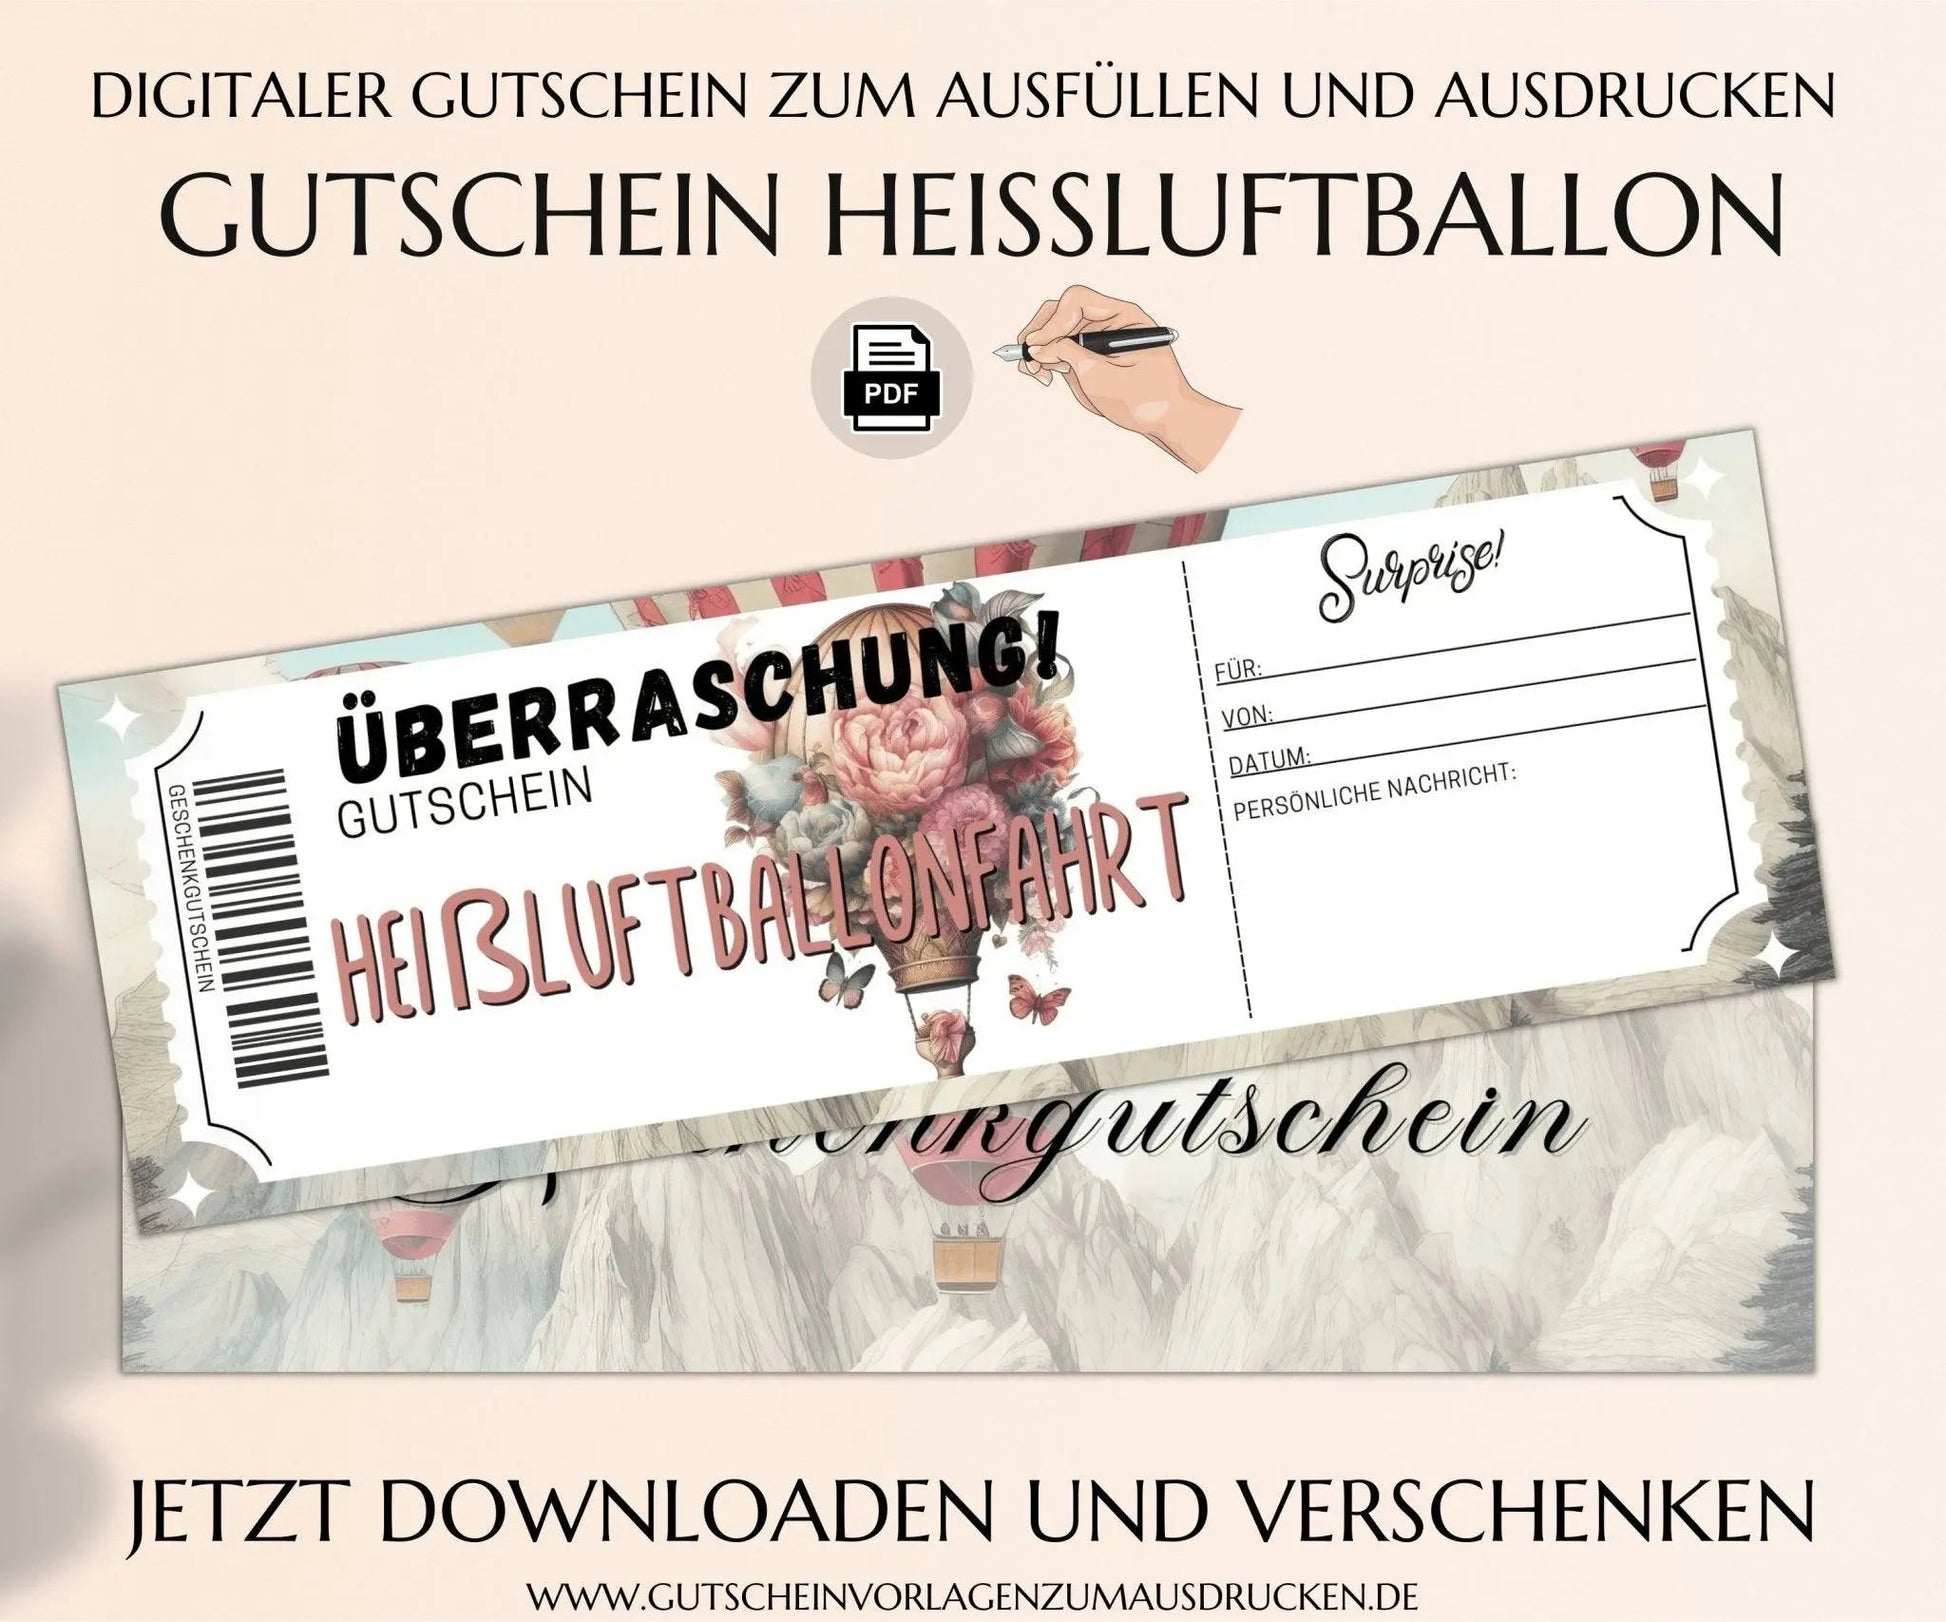 Heißluftballonfahrt Gutschein Vorlage zum Ausdrucken | Heißluftballon Erlebnisgutschein | Ballonfahrt Geschenkgutschein | JSK208 - JSKDesignStudio.de